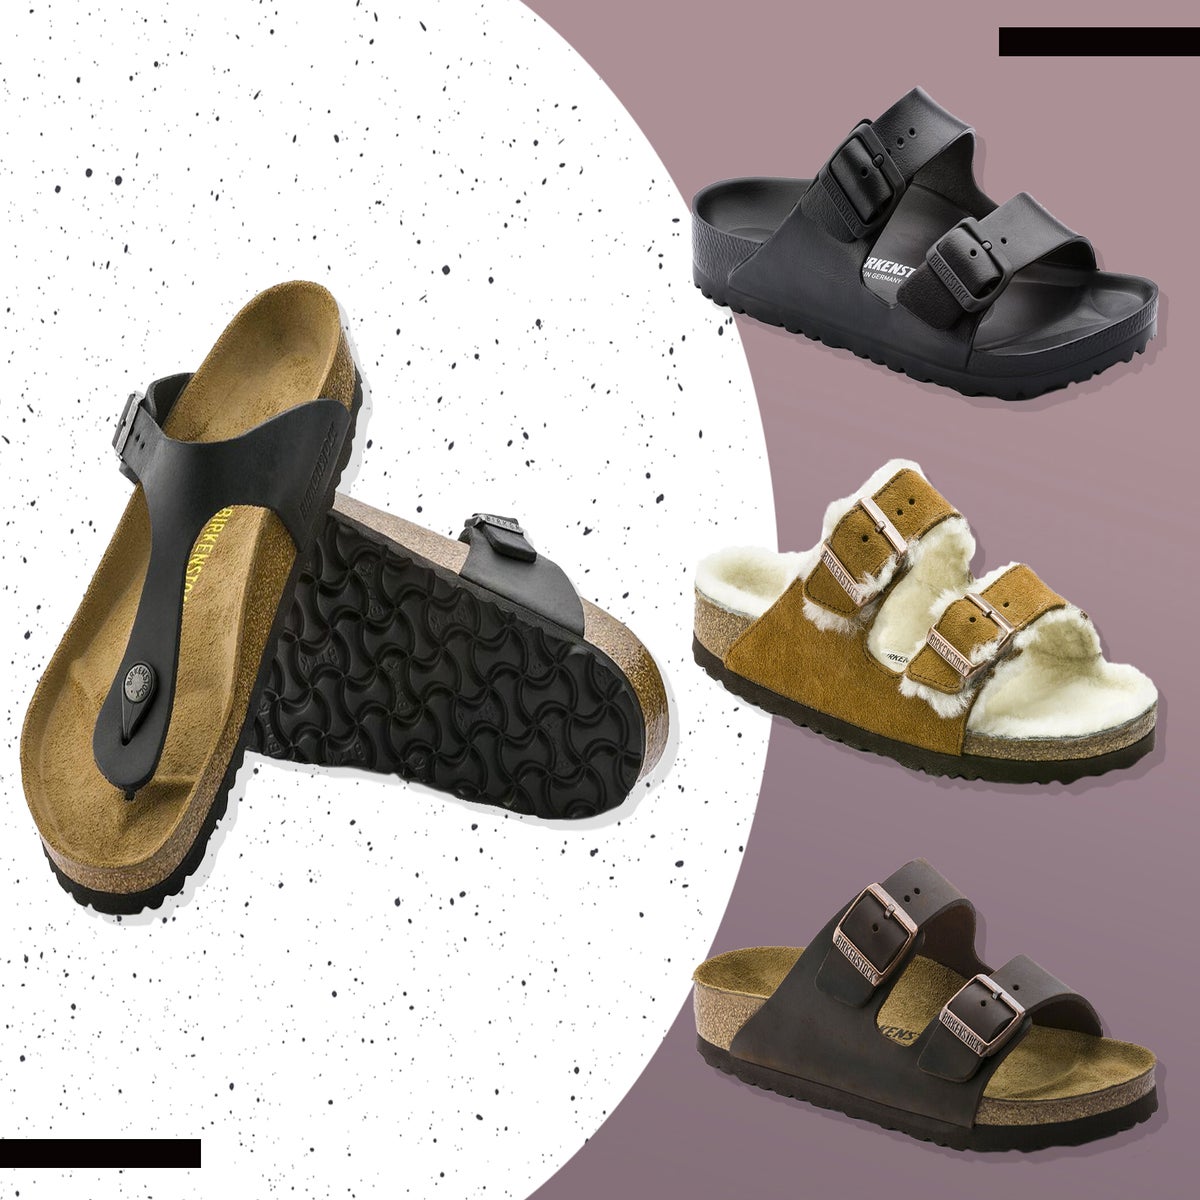 Birkenstock: sandals should you buy? |